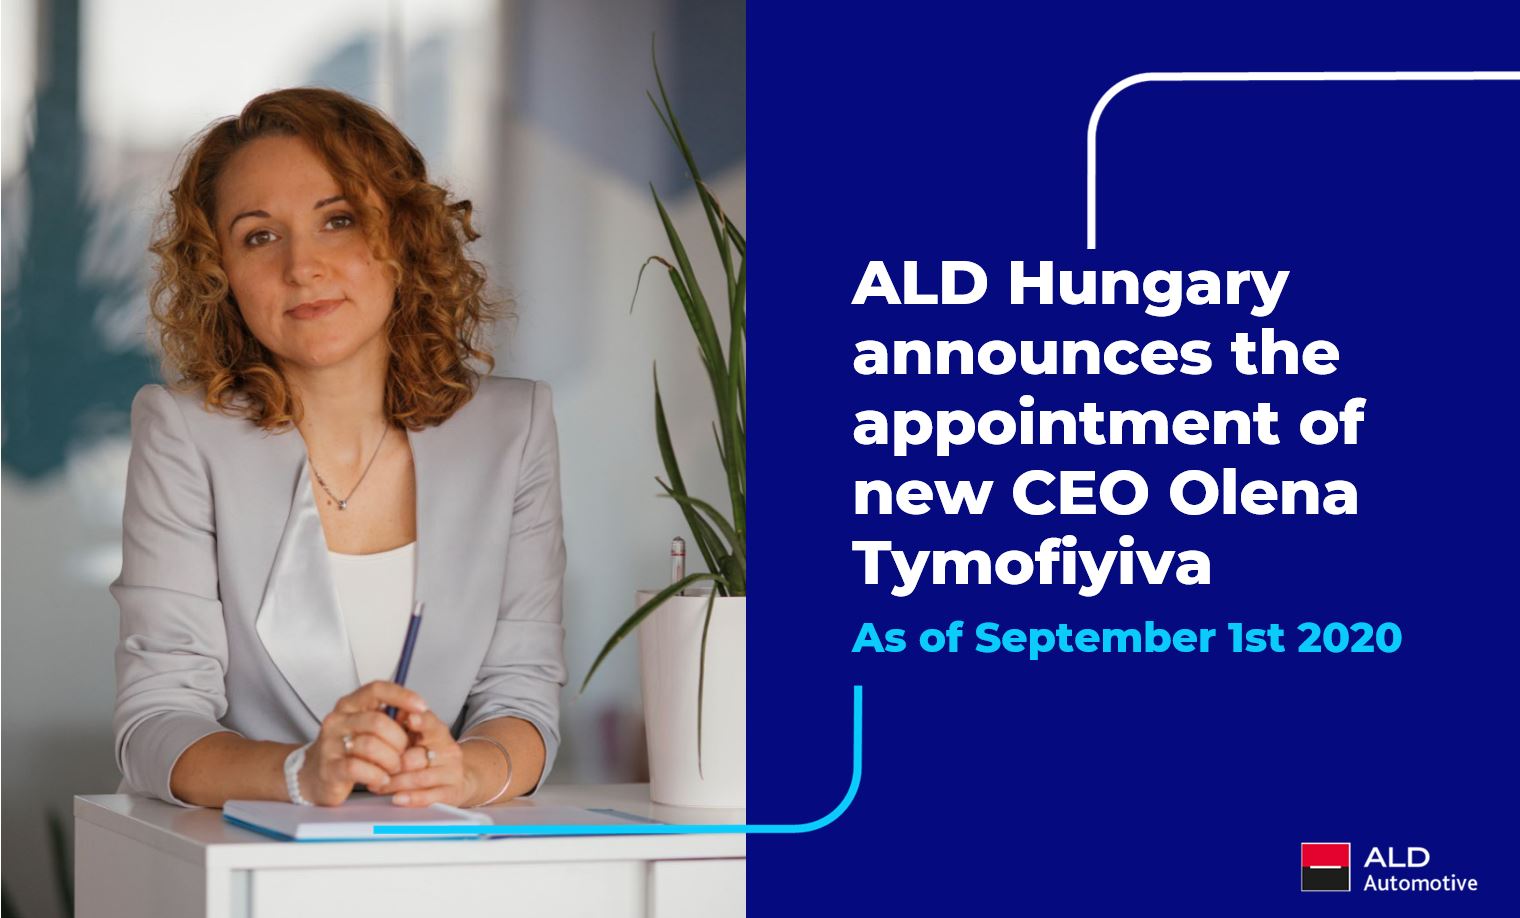 Olena Tymofiyiva az új ügyvezető az ALD Magyarország Kft. élén